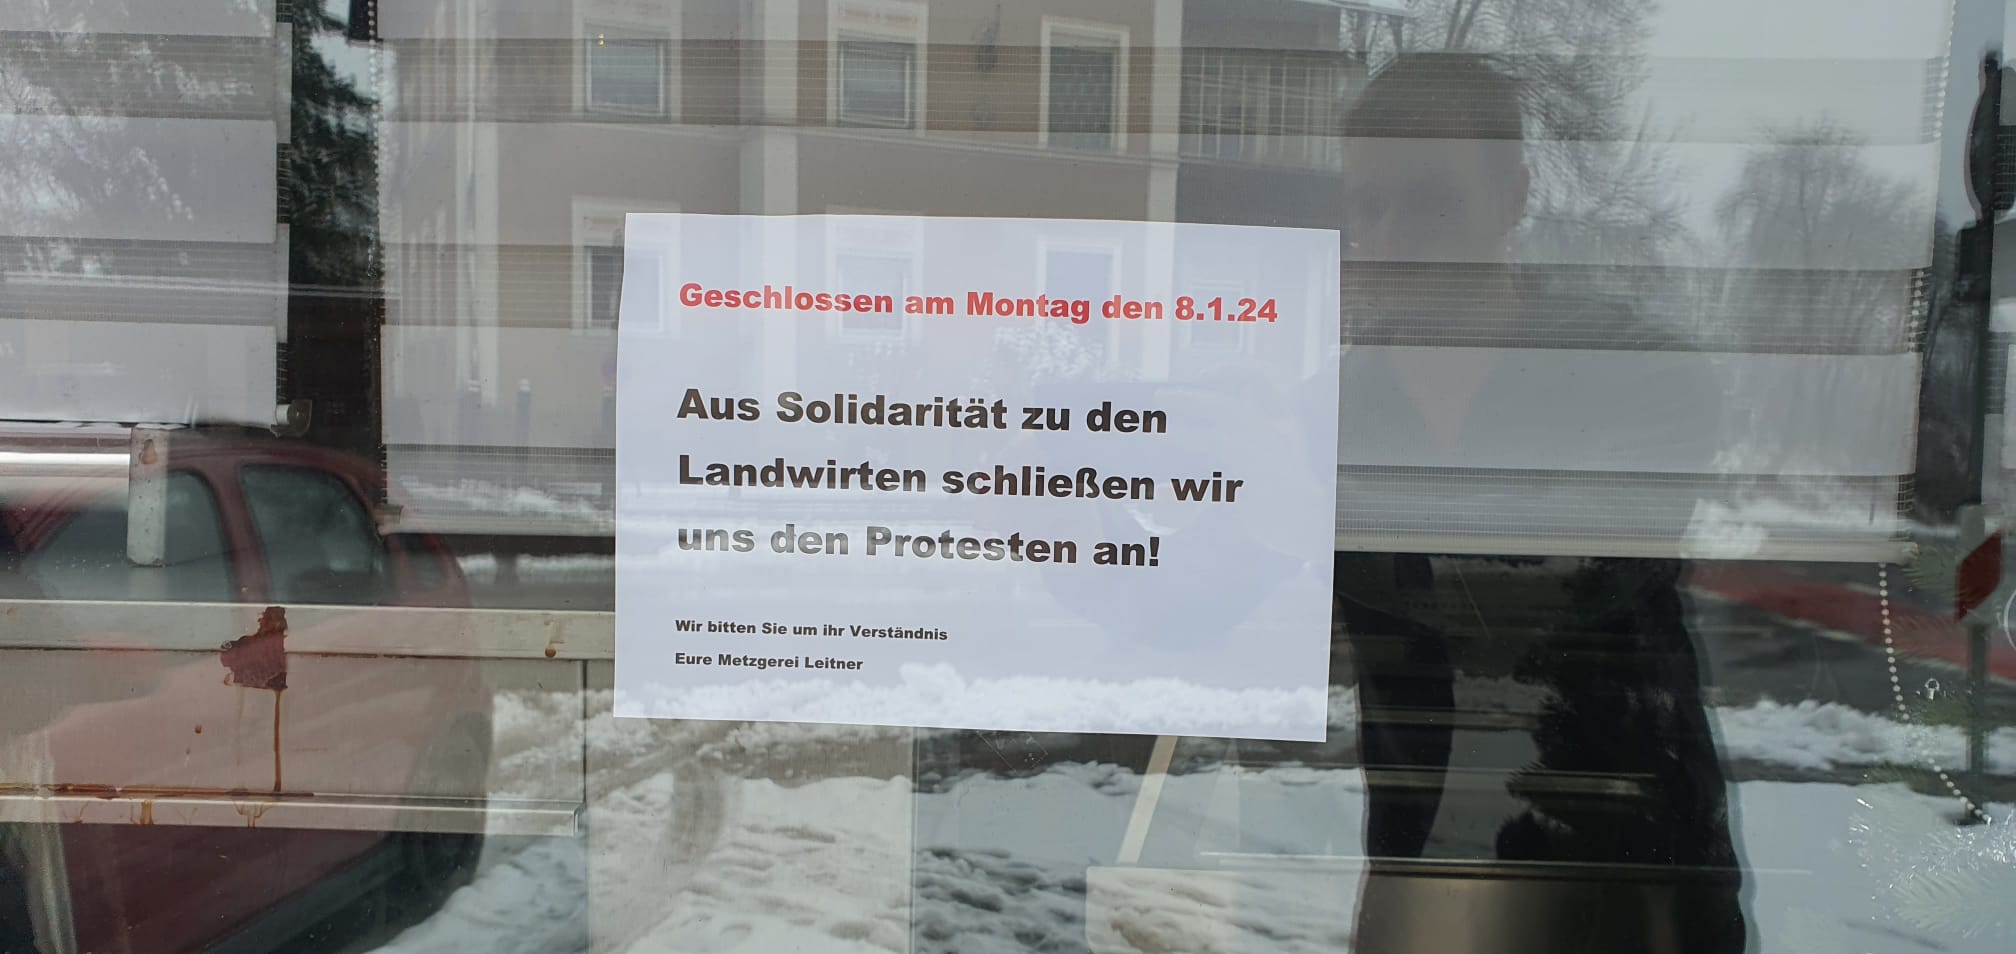 Die Metzgerei am Schlossberg bleibt heute geschlossen. Foto: Innpuls.me